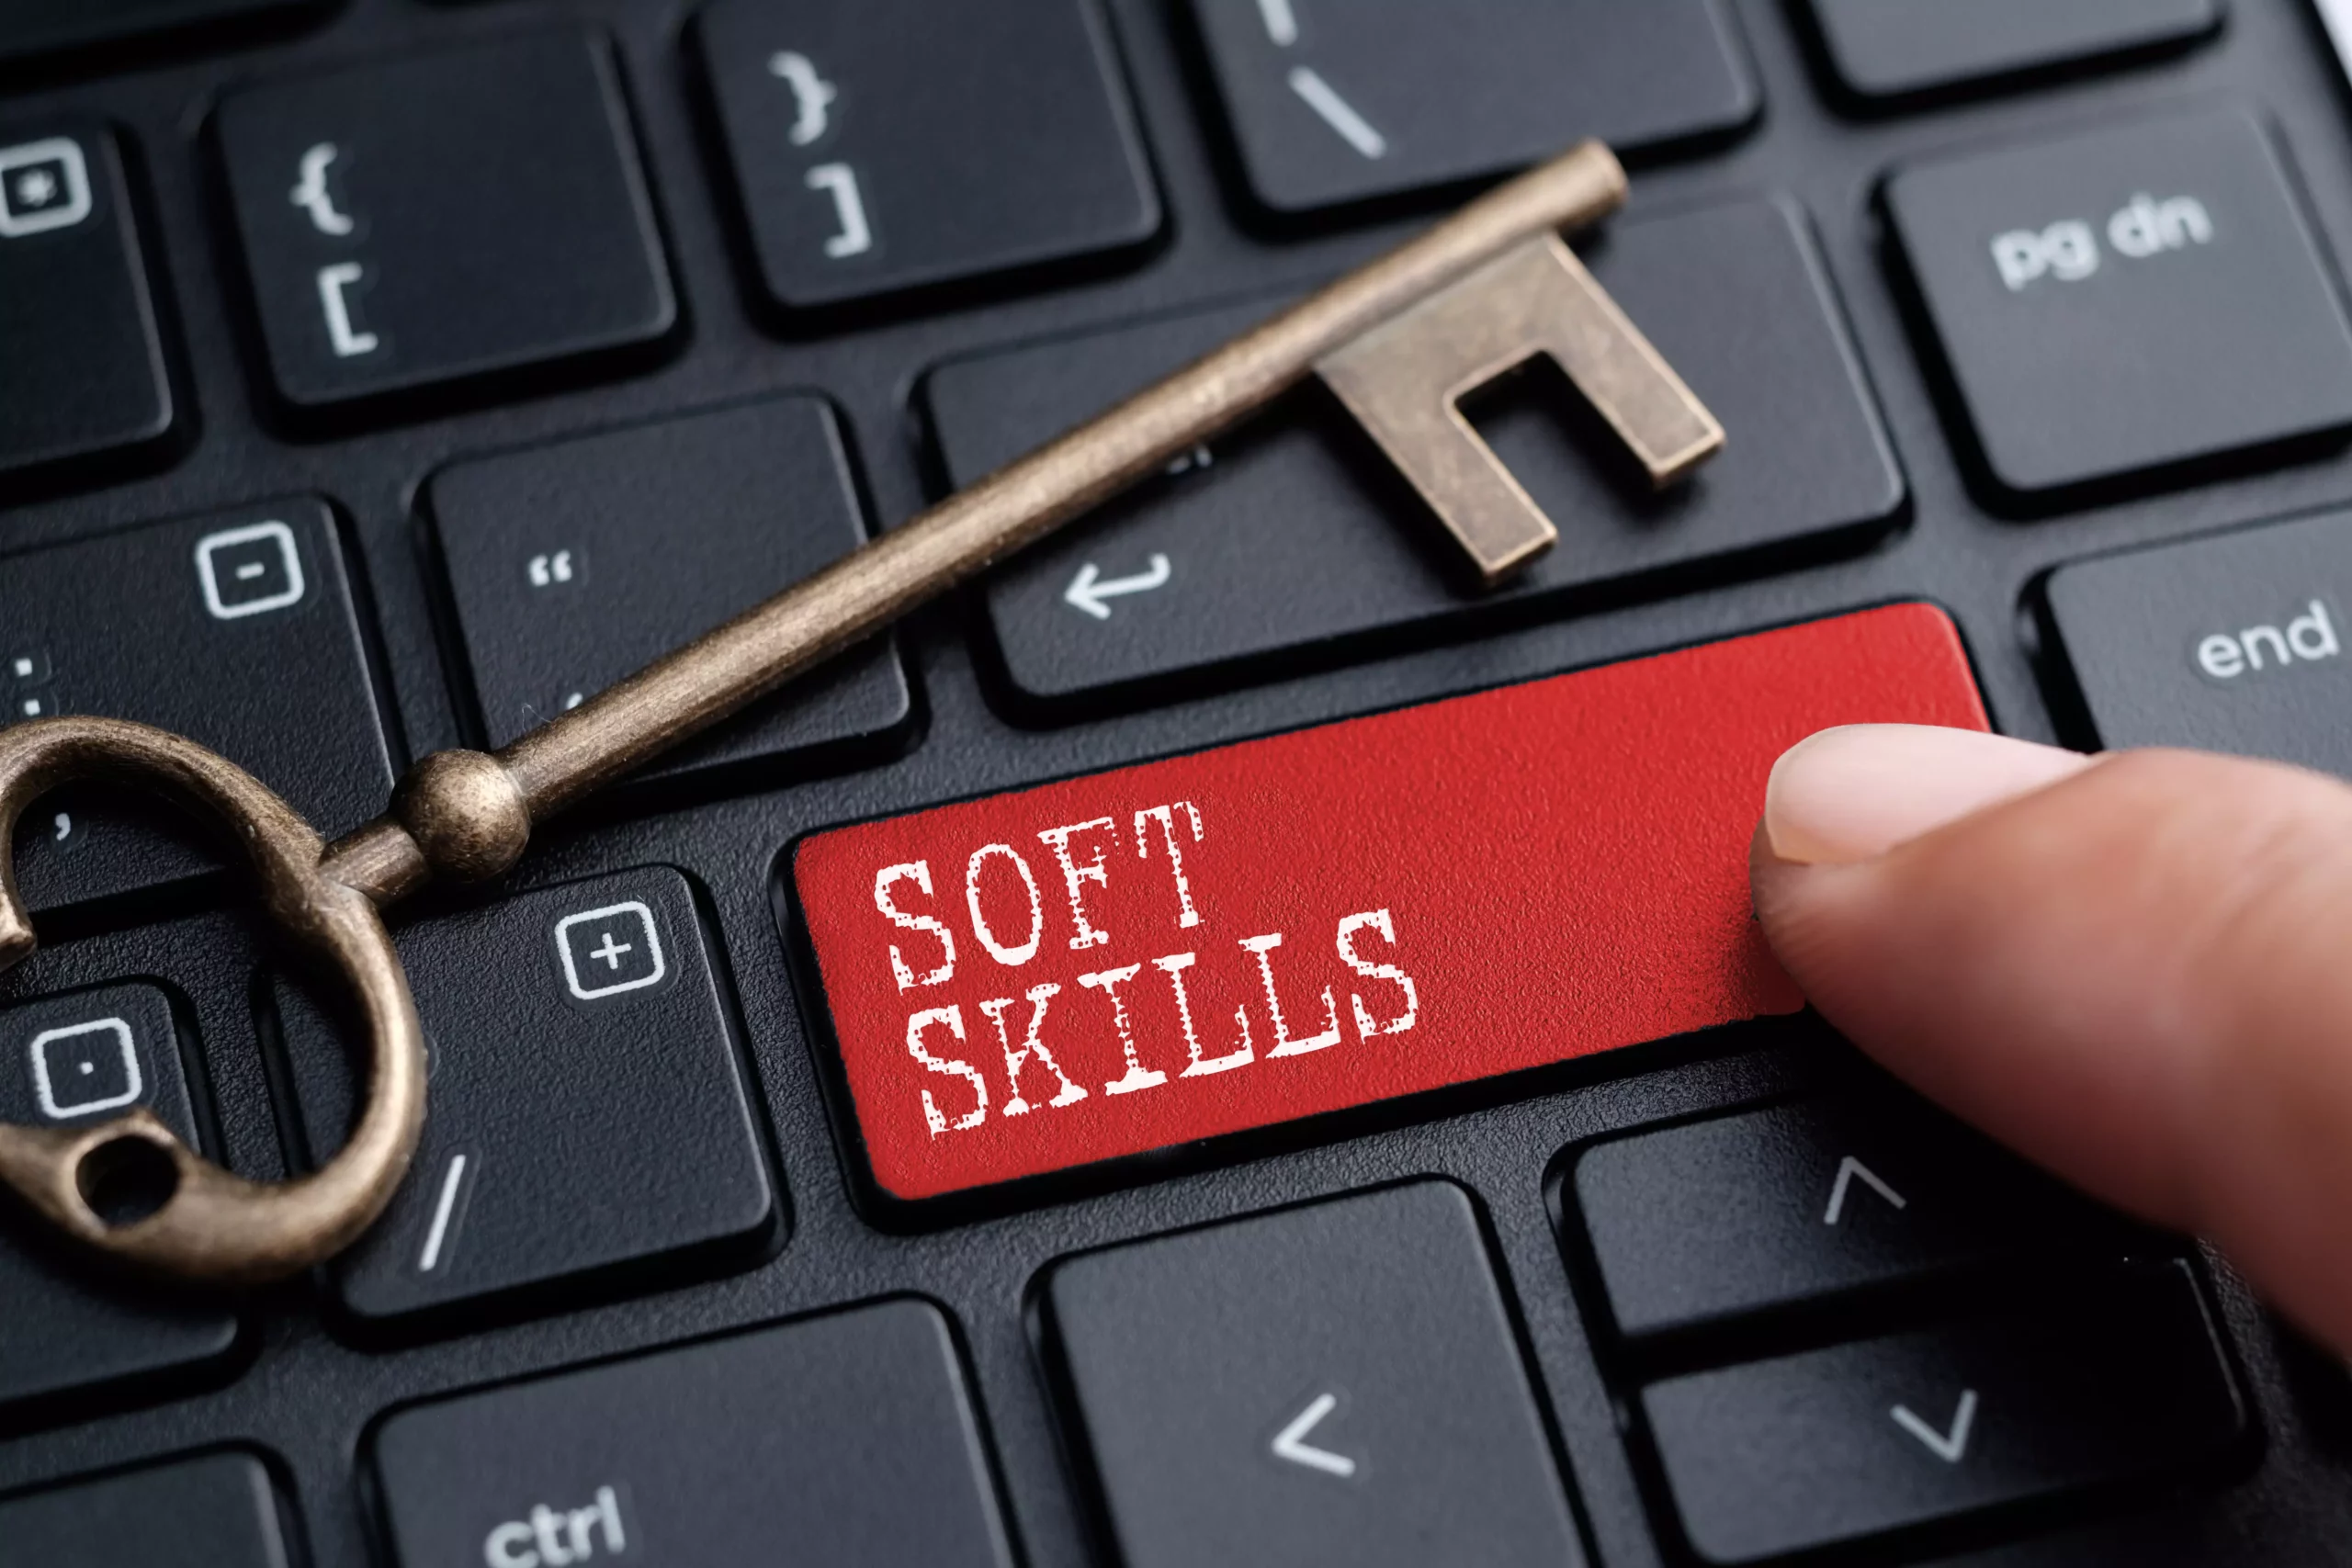 Palestra: Soft Skills - Algumas competências para empreendedores neste novo cenário